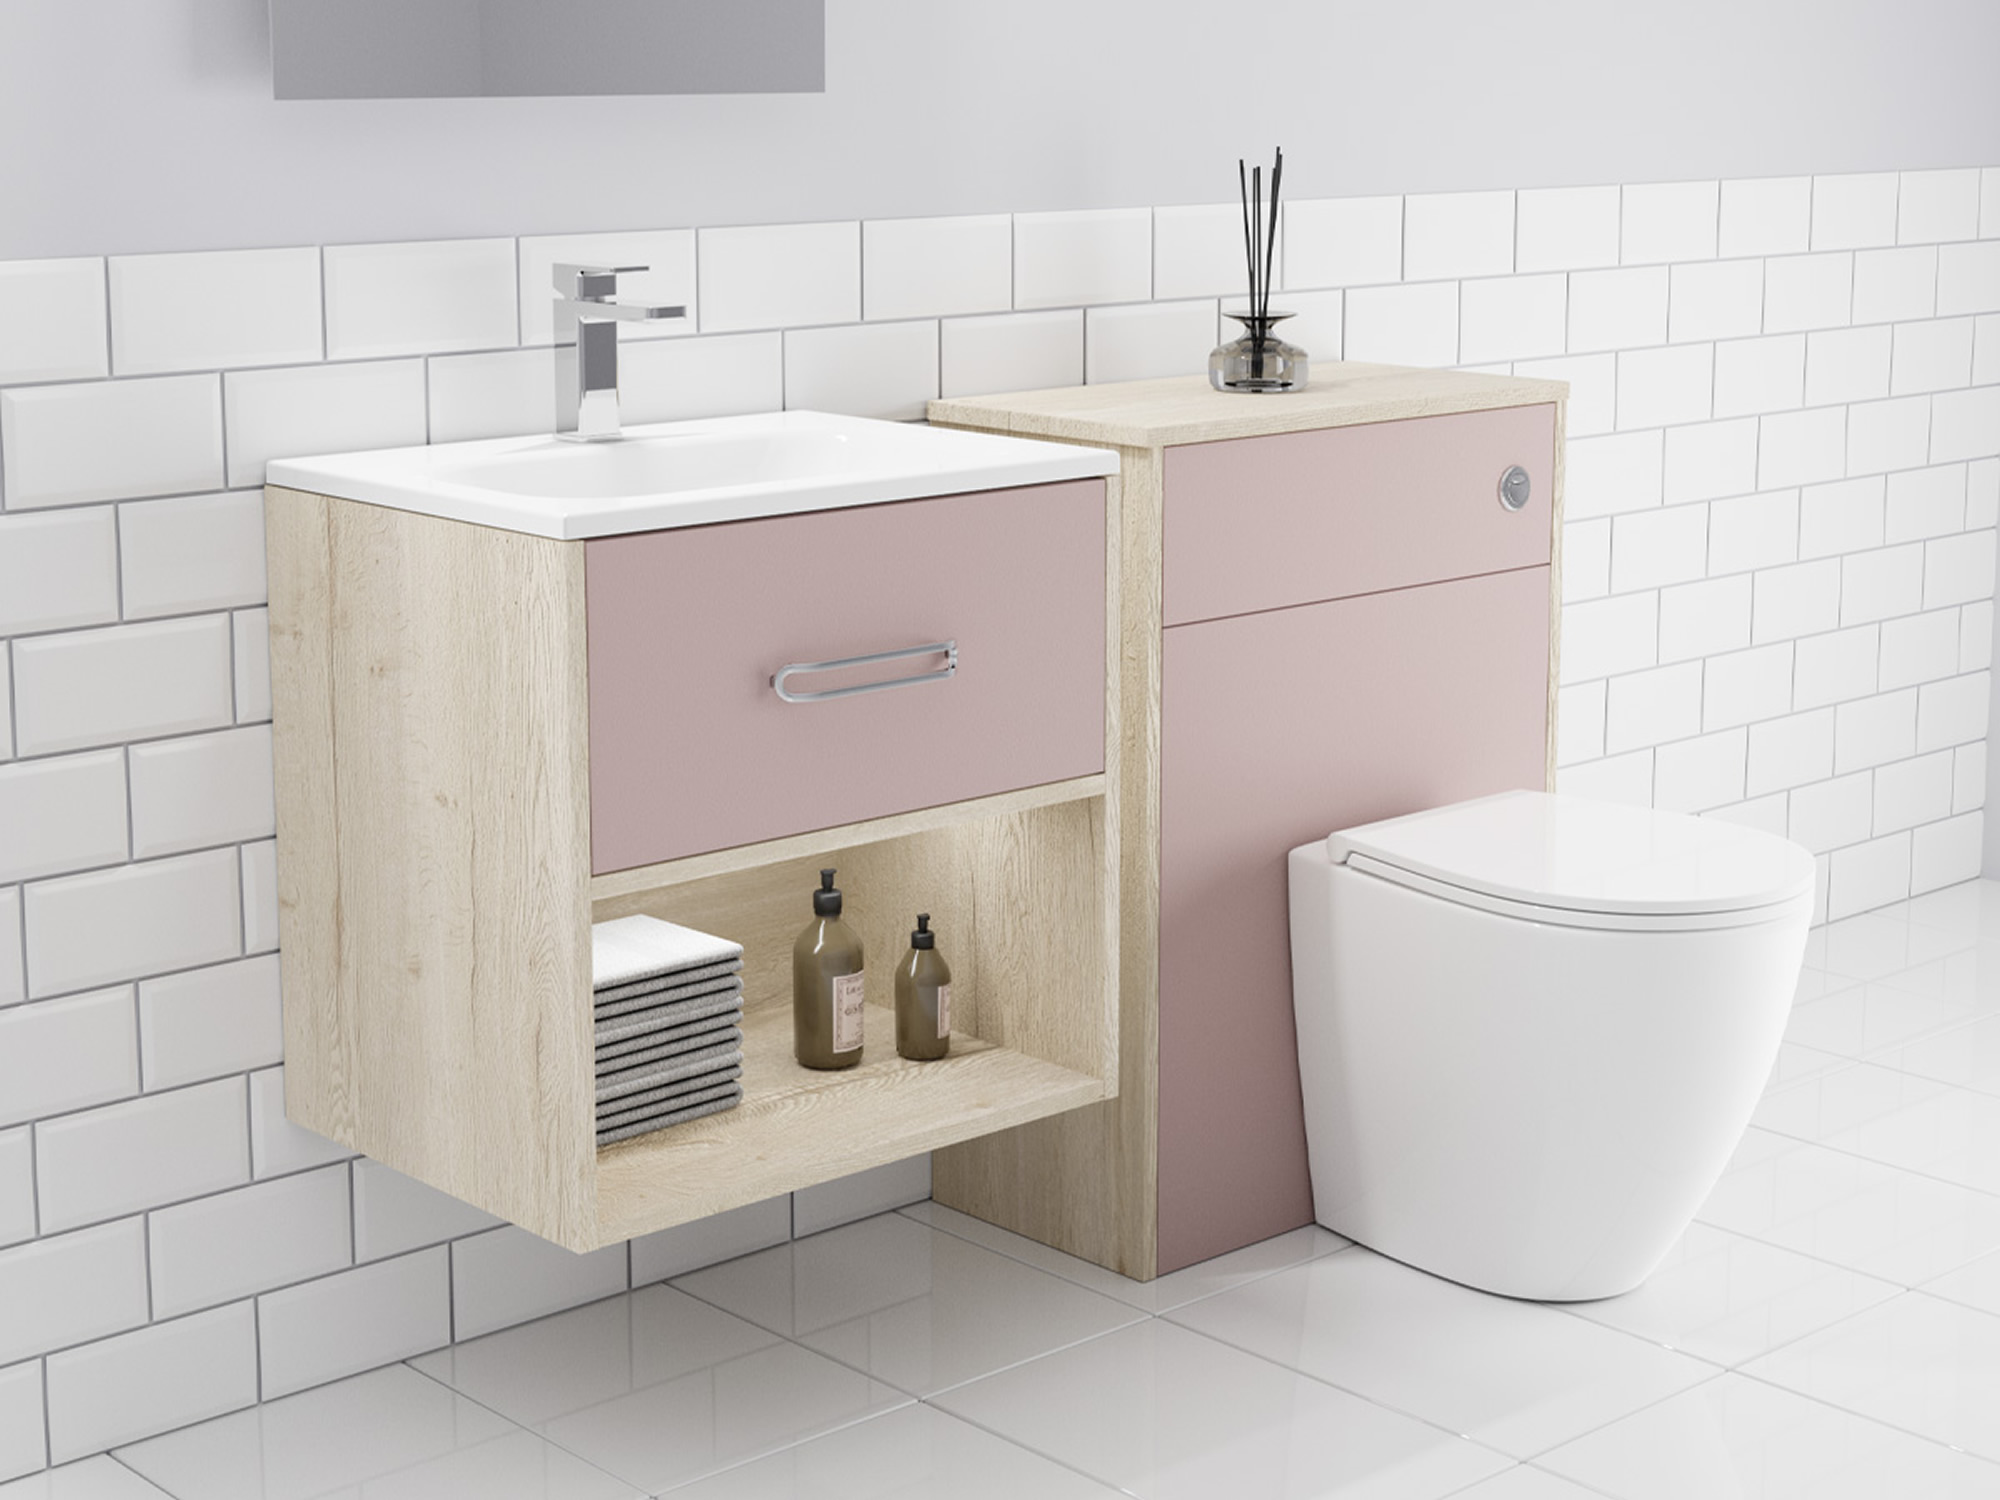 Design Apri Rose Bathroom